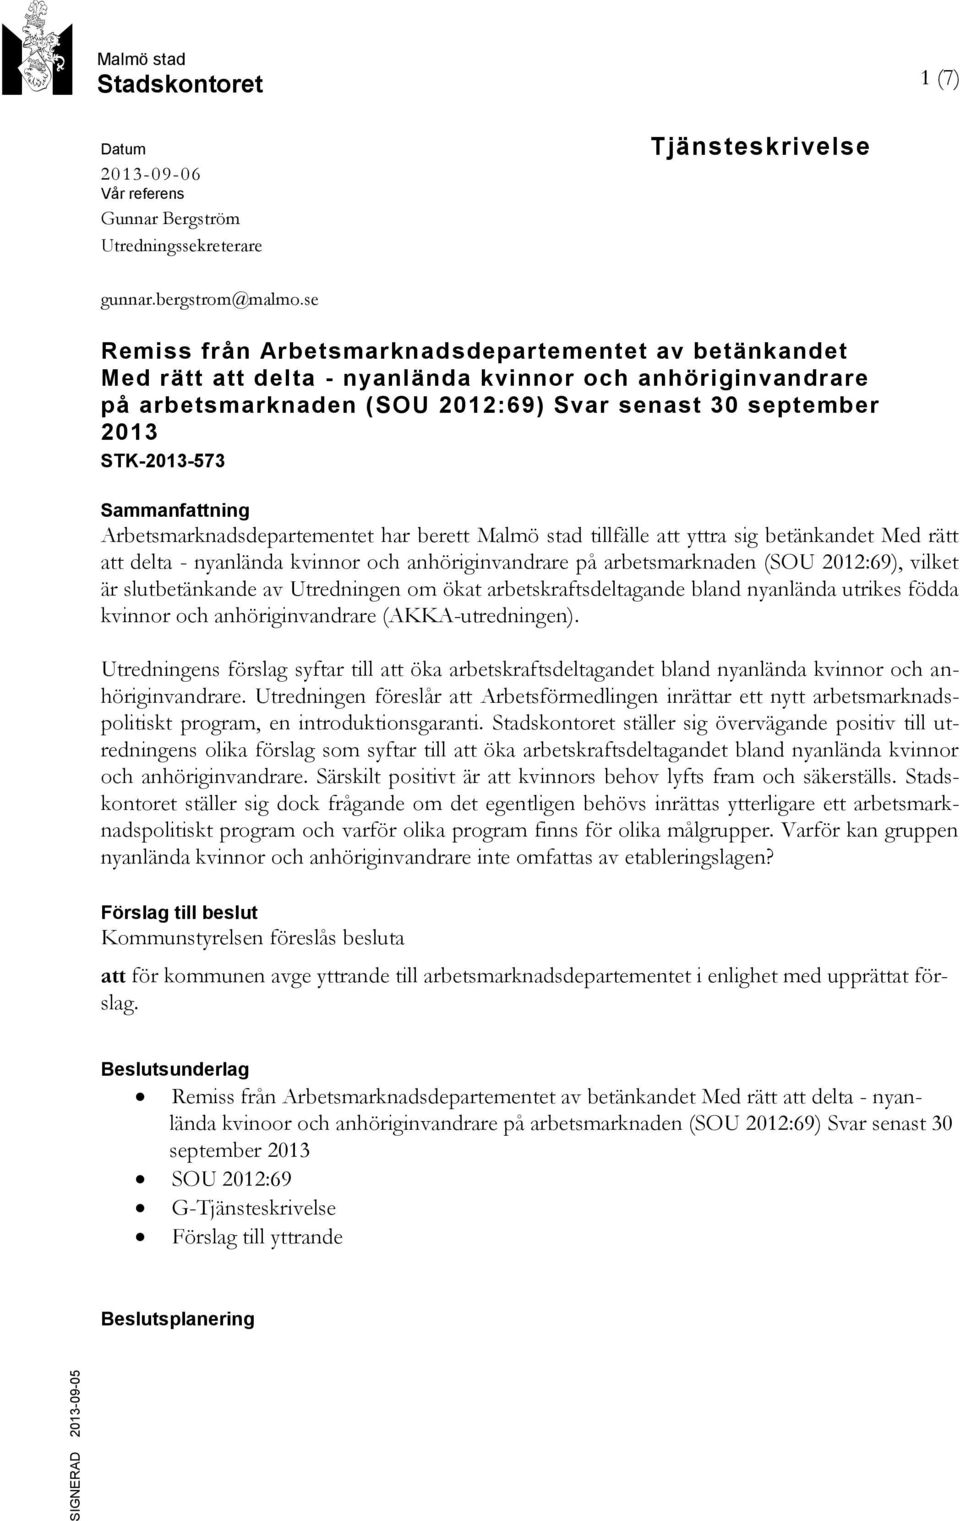 Sammanfattning Arbetsmarknadsdepartementet har berett Malmö stad tillfälle att yttra sig betänkandet Med rätt att delta - nyanlända kvinnor och anhöriginvandrare på arbetsmarknaden (SOU 2012:69),